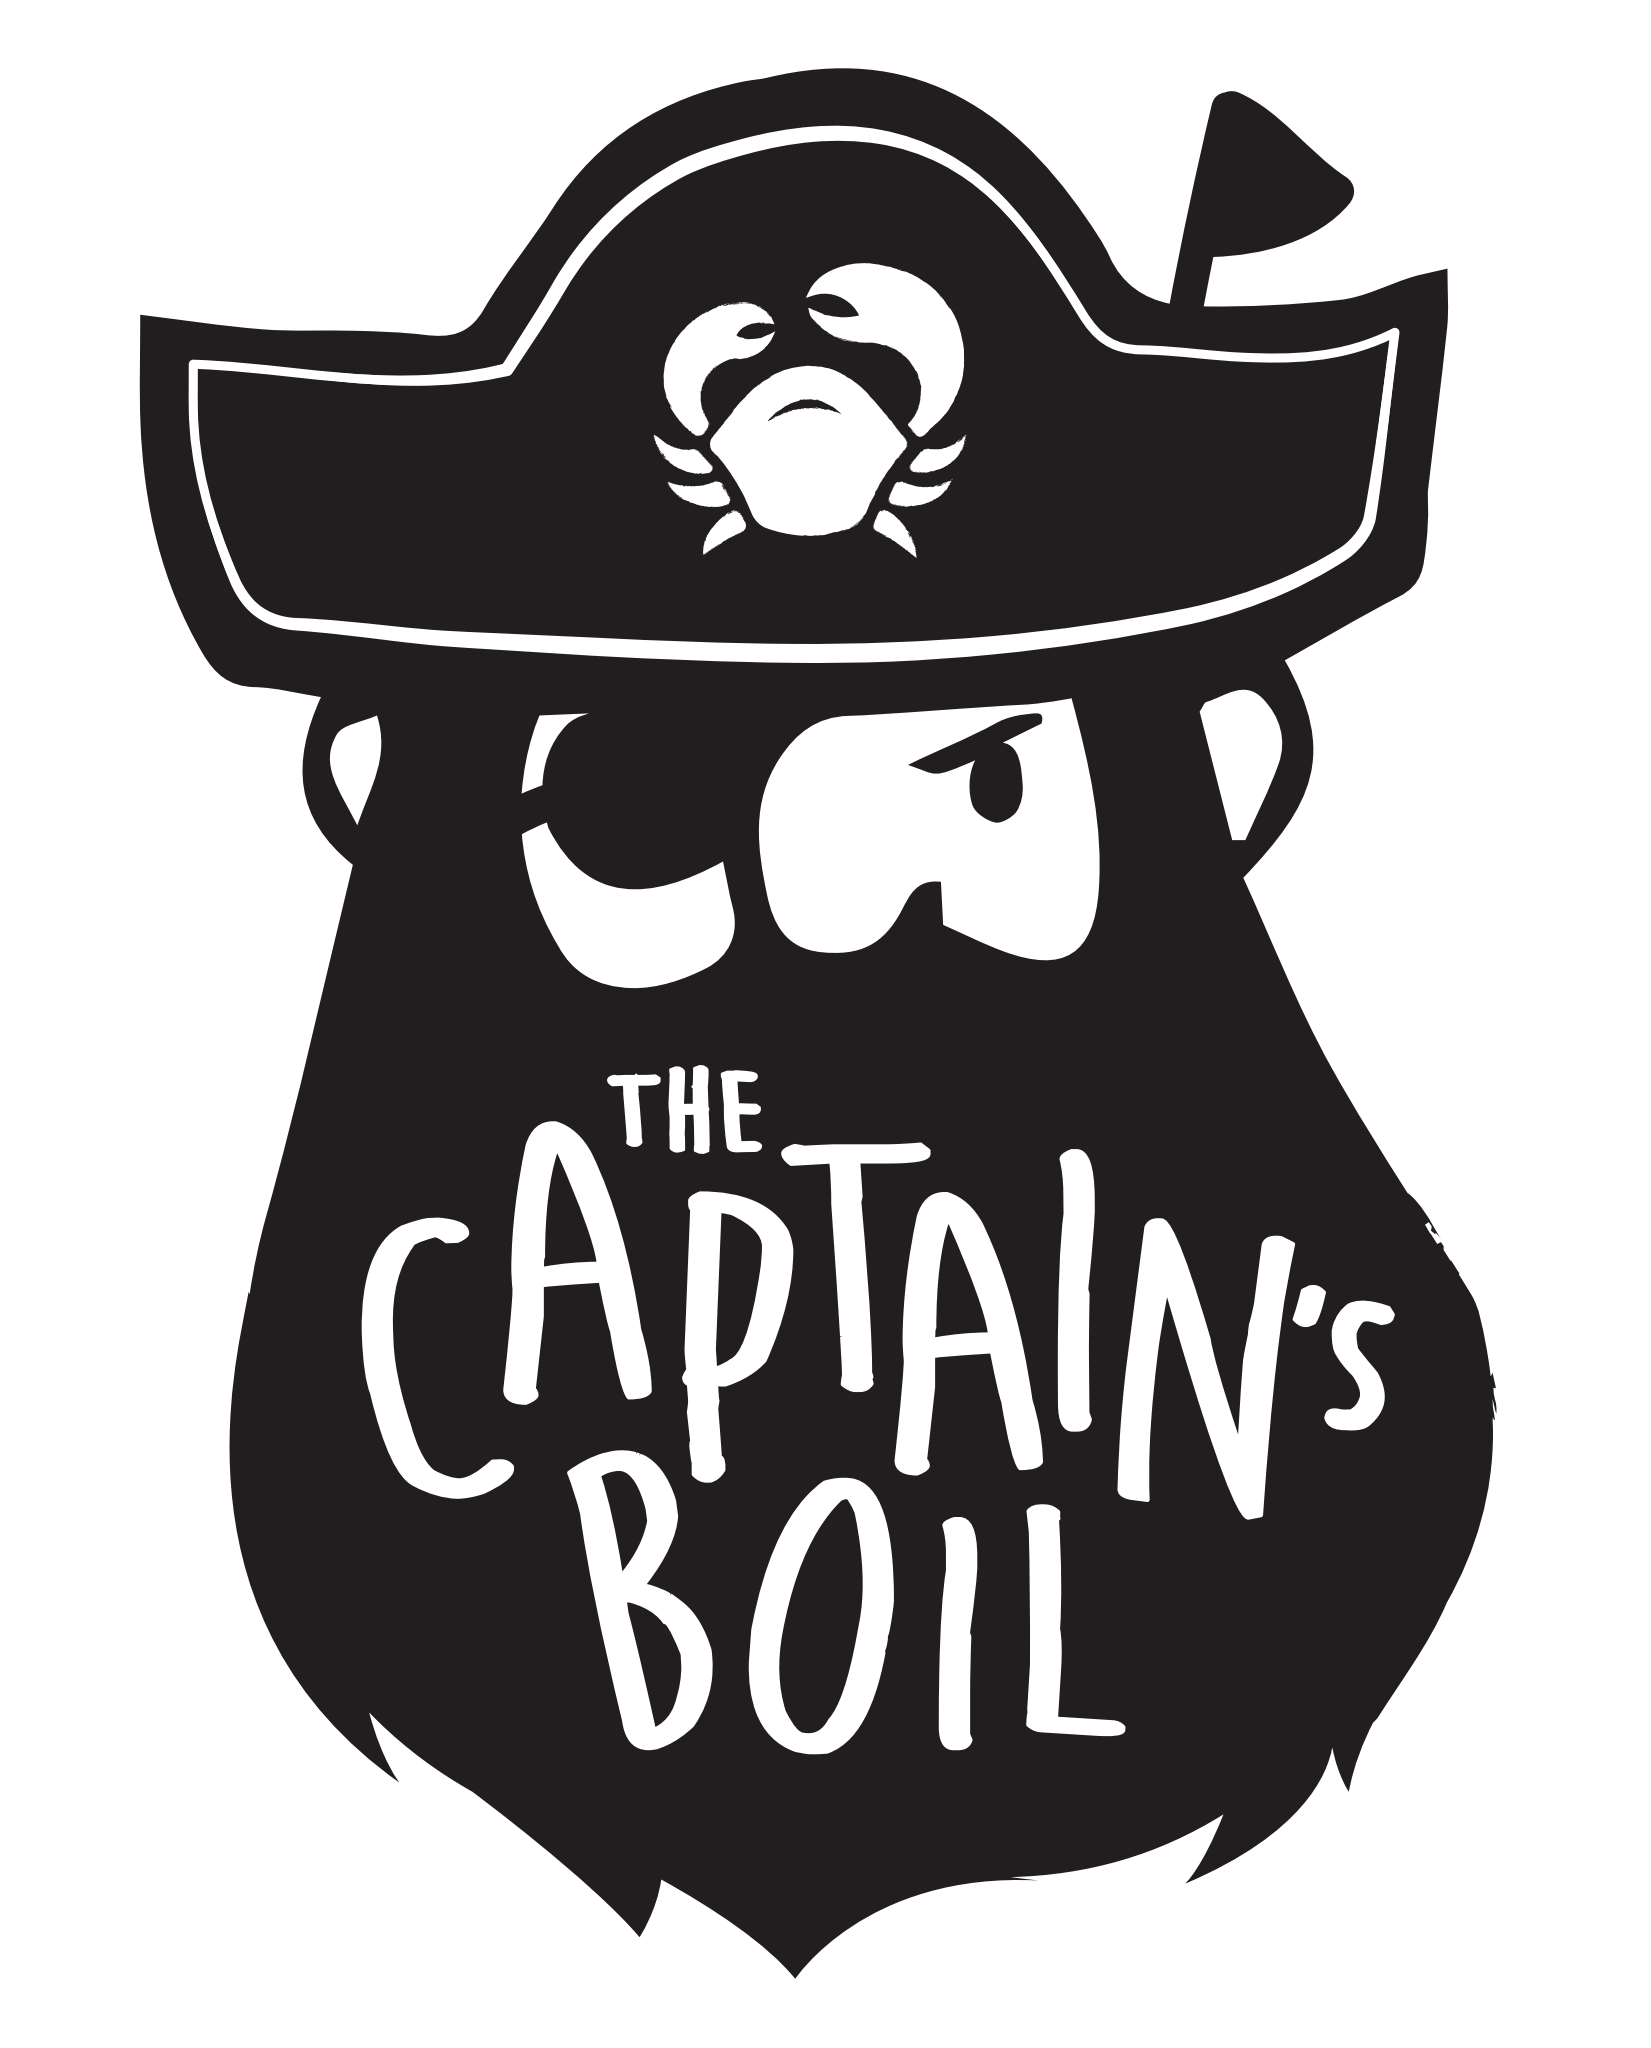 The Captain's Boil